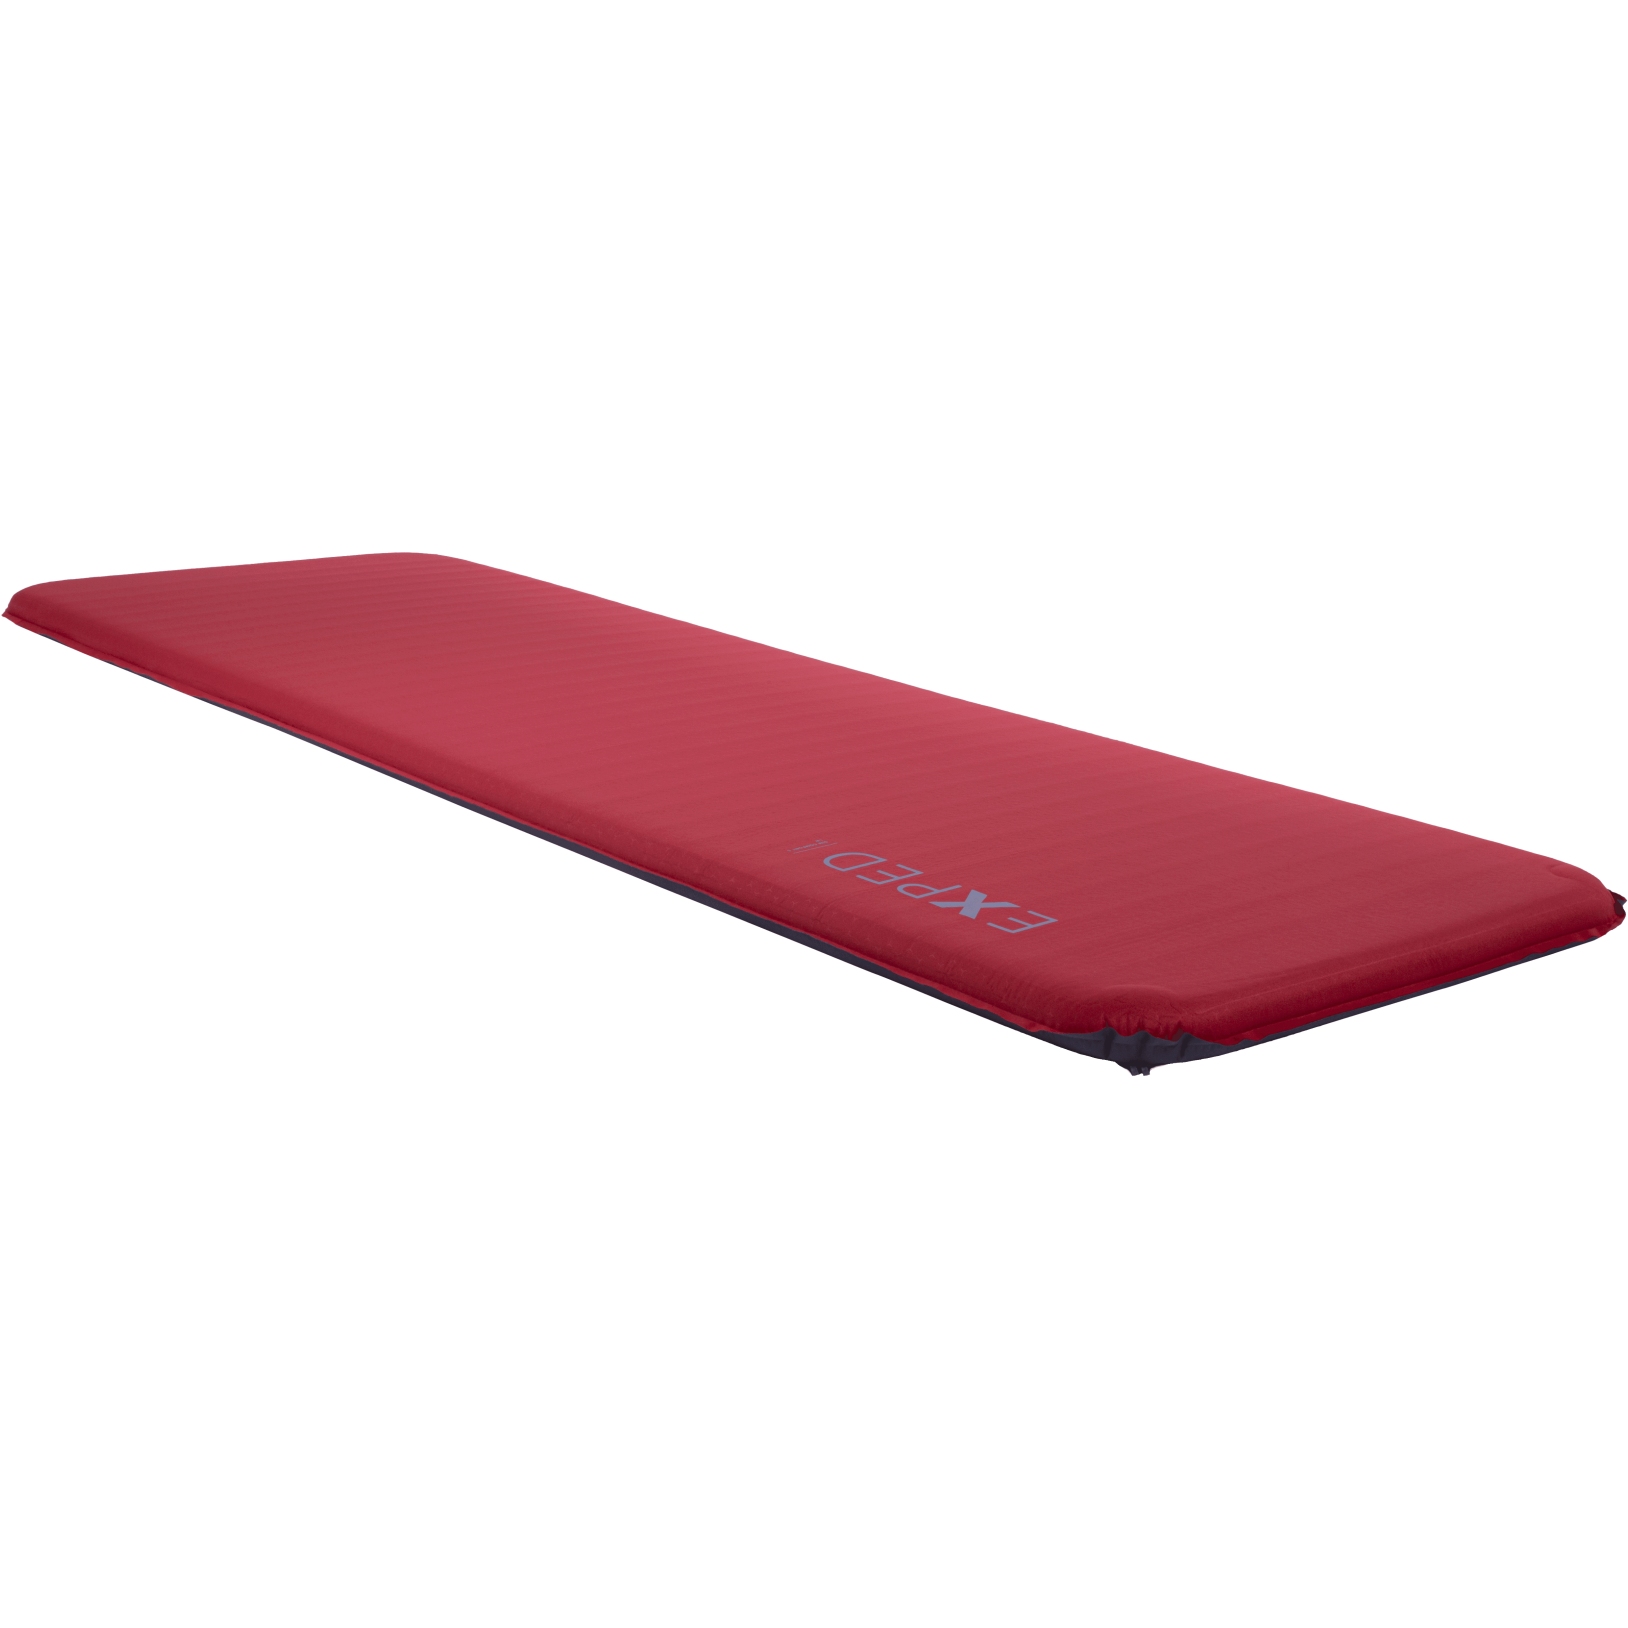 Produktbild von Exped SIM Comfort 5 Isomatte - LW - ruby red